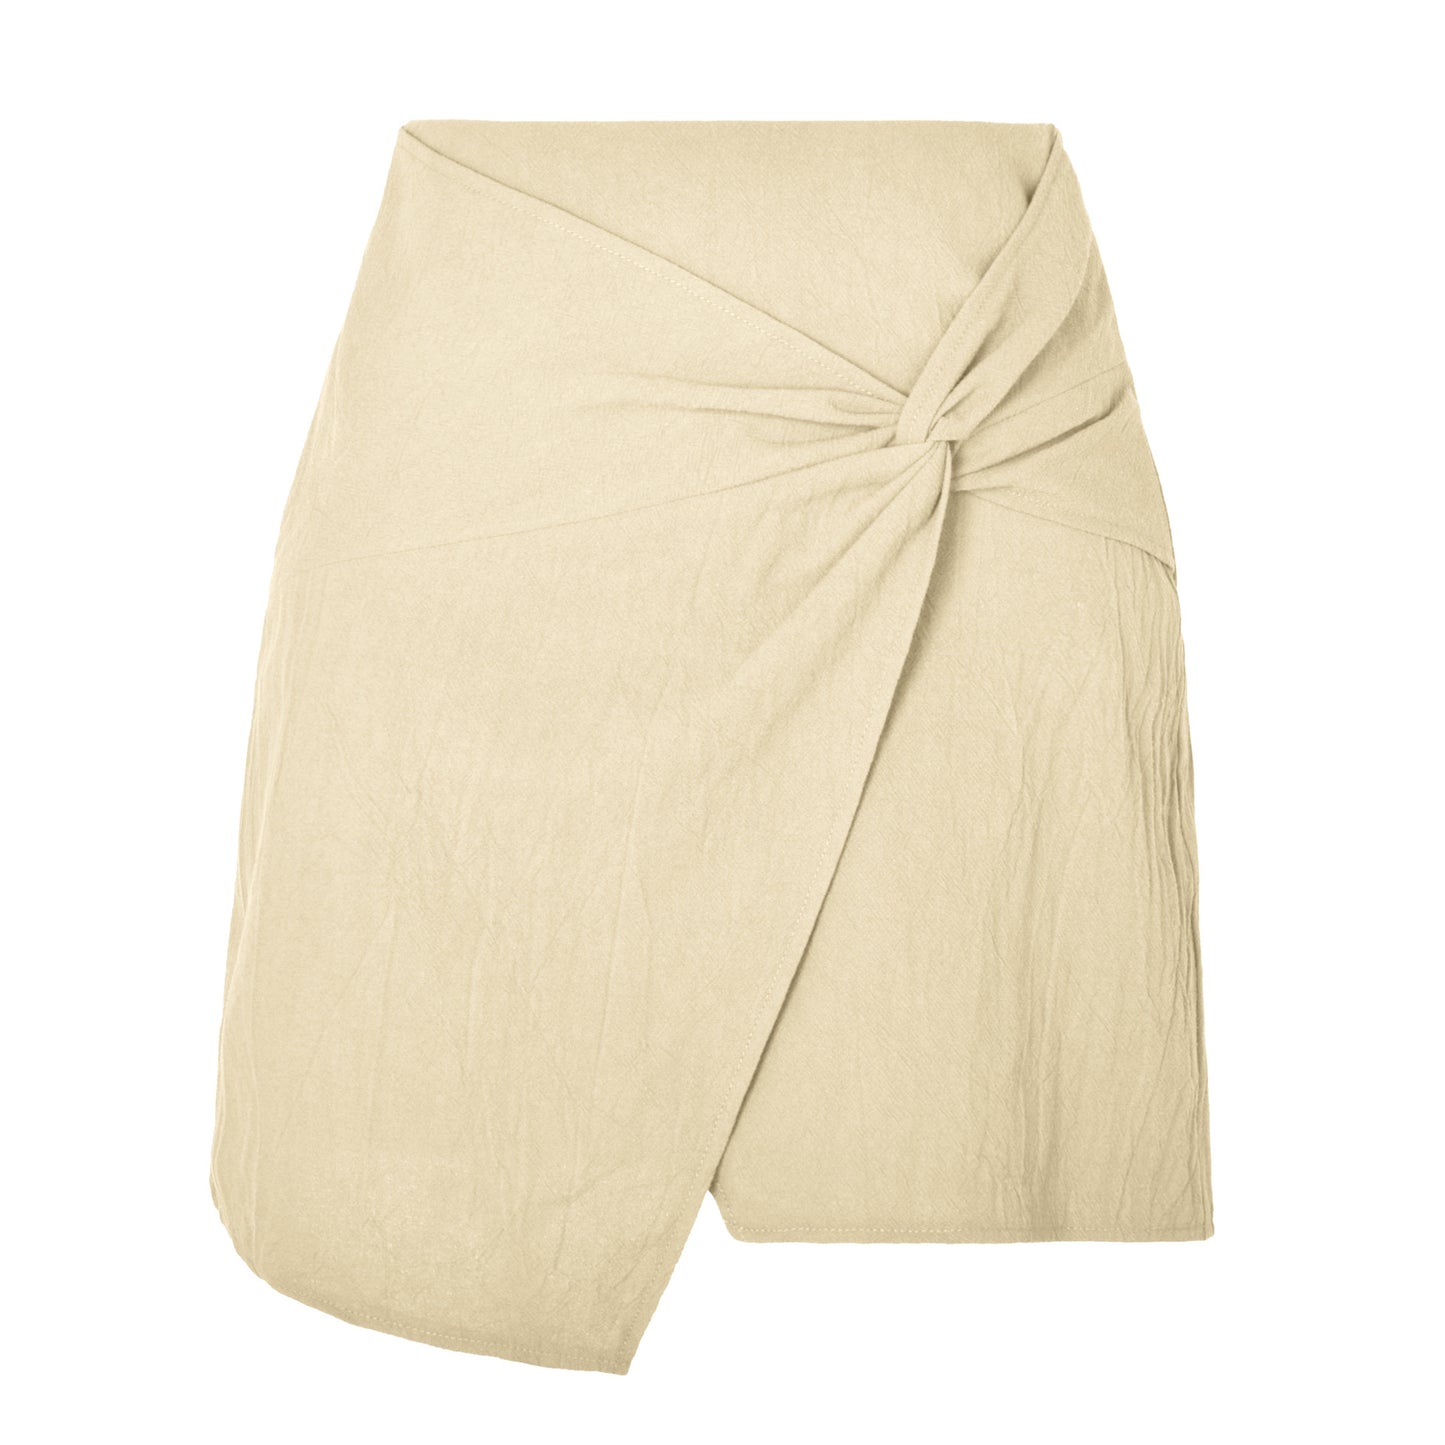 Women's High Waist Cotton And Linen Twisted Skirt